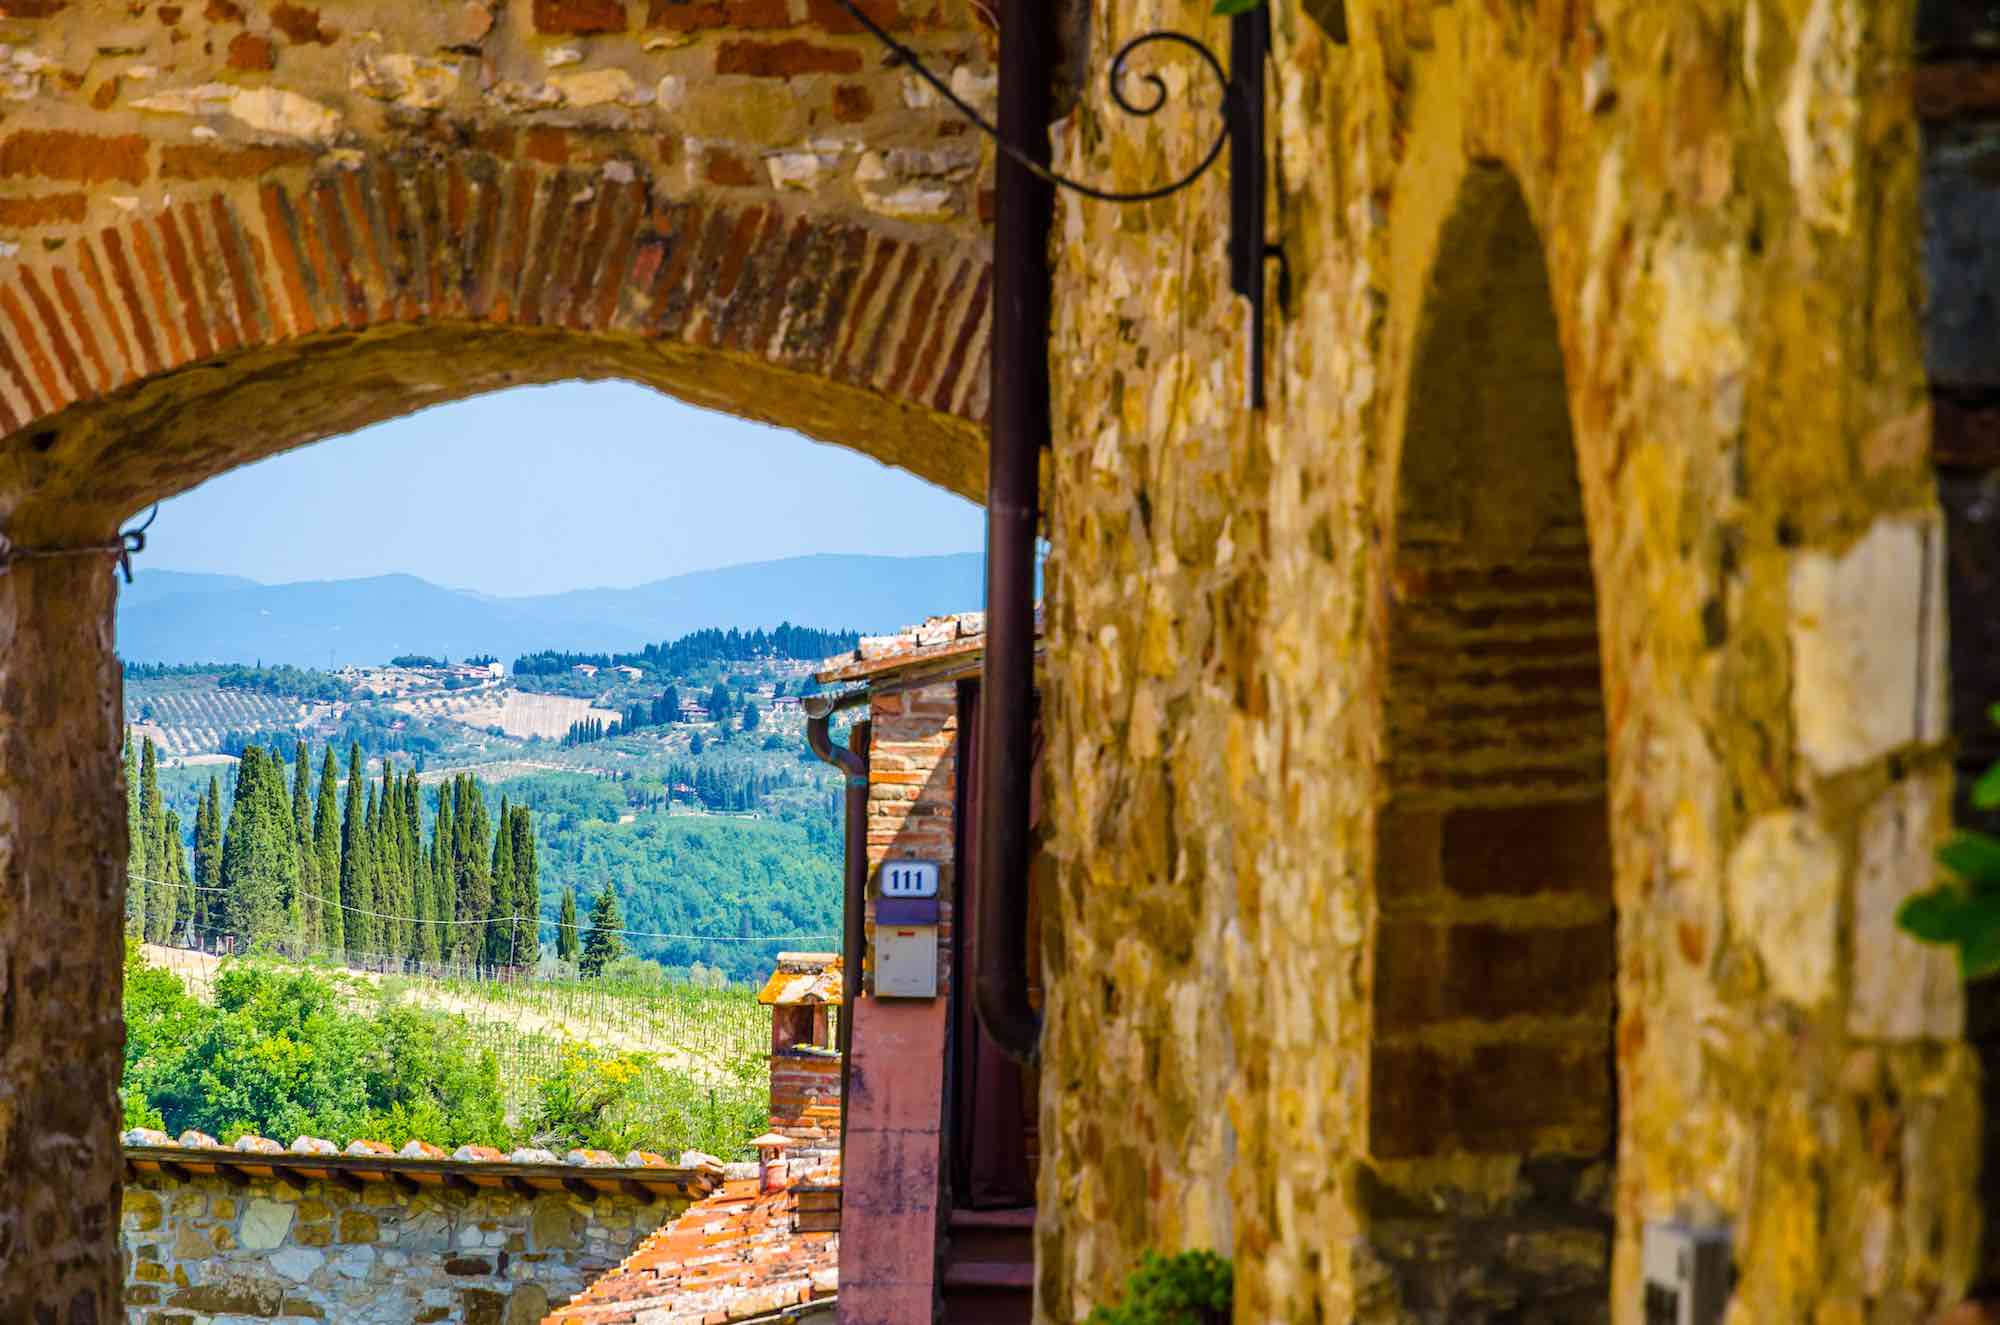 7 borghi del Chianti da visitare durante una vacanza in Toscana: scorci, piazze, castelli e viuzze per conoscere il vero Chianti Classico